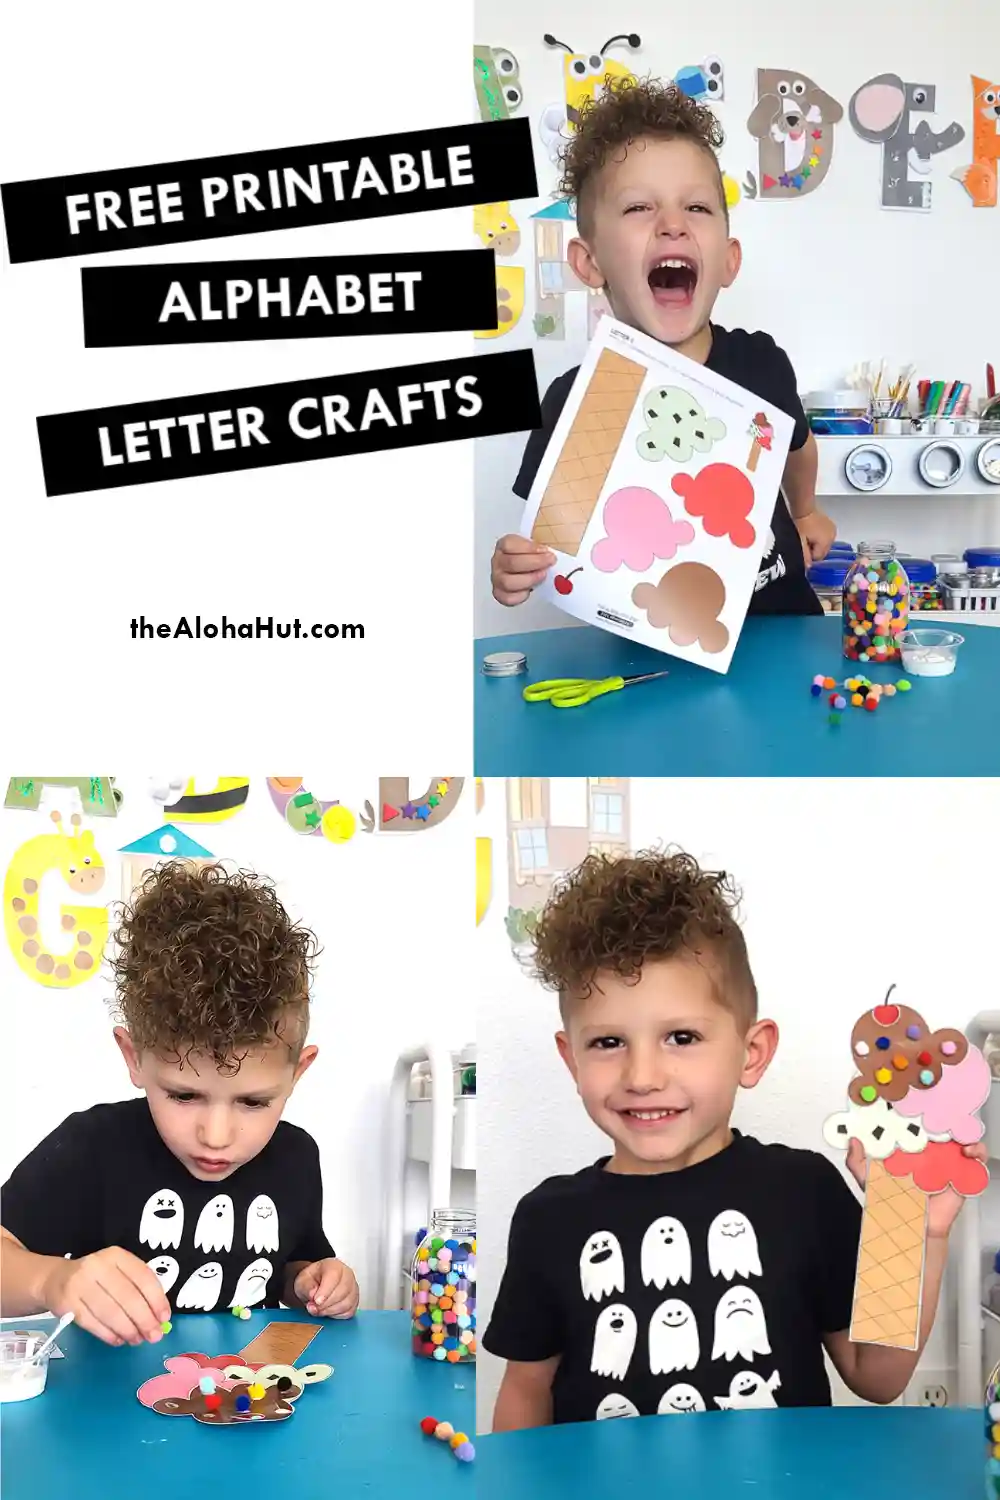 Alphabet Letter Crafts - Letter I - free printable